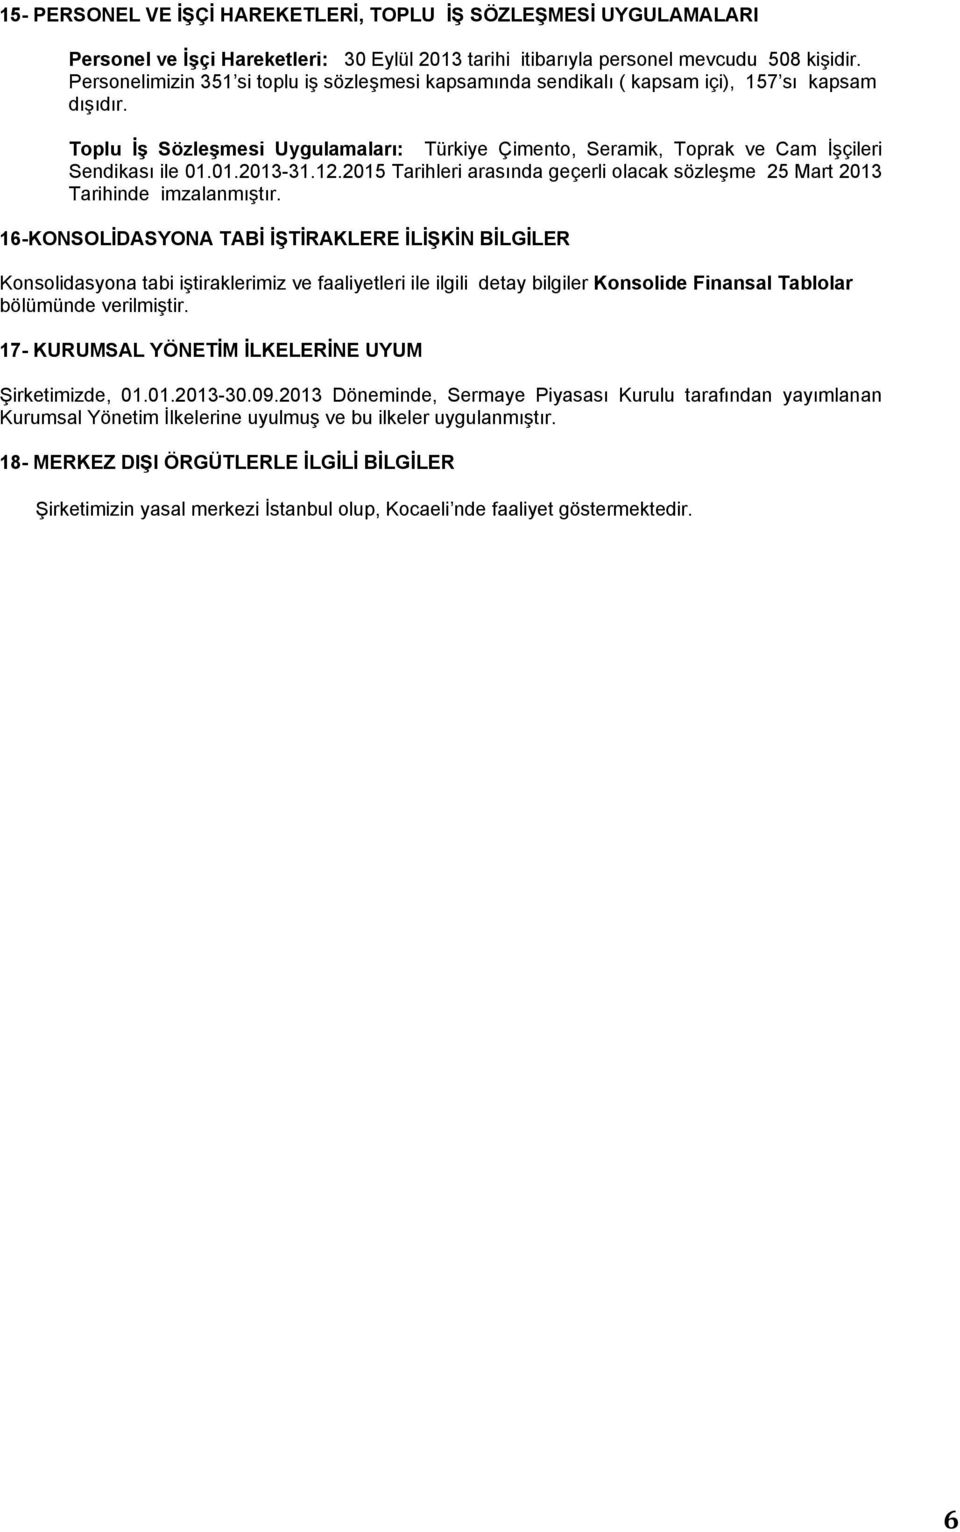 Toplu İş Sözleşmesi Uygulamaları: Türkiye Çimento, Seramik, Toprak ve Cam İşçileri Sendikası ile 01.01.2013-31.12.2015 Tarihleri arasında geçerli olacak sözleşme 25 Mart 2013 Tarihinde imzalanmıştır.